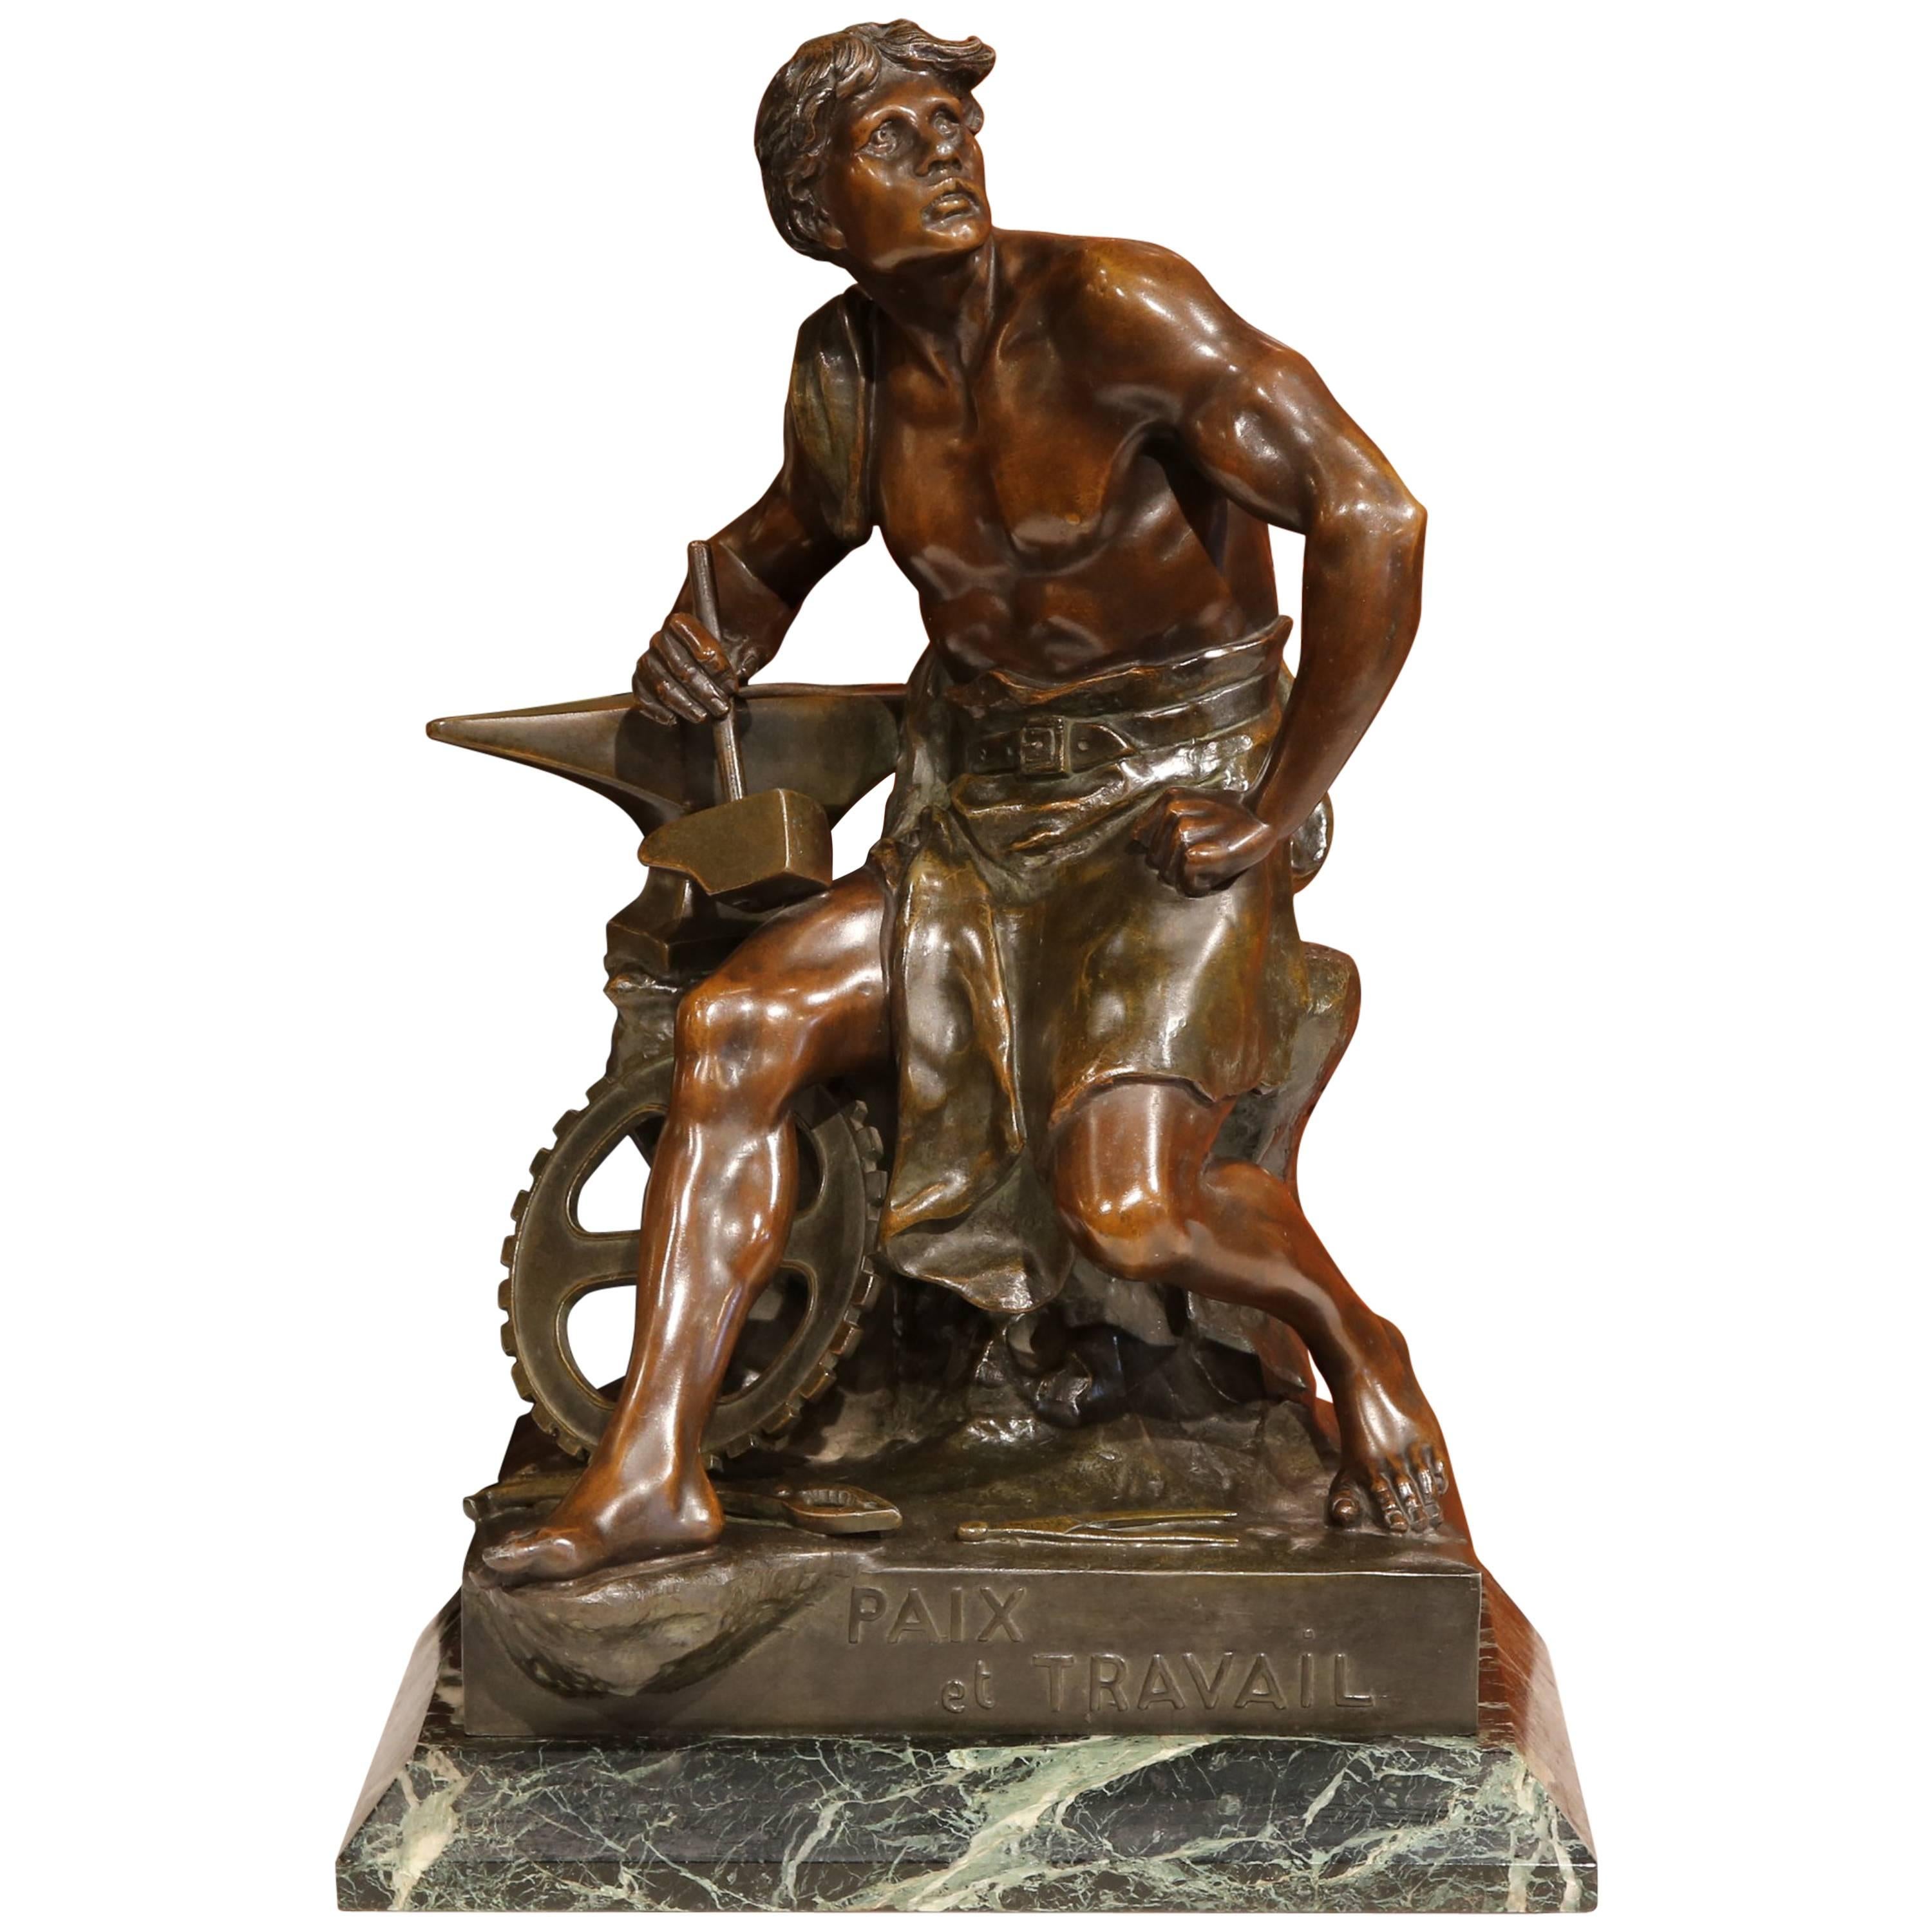 19th Century Patinated Bronzed Figure "Paix et Travail, " Signed "E. Picault"